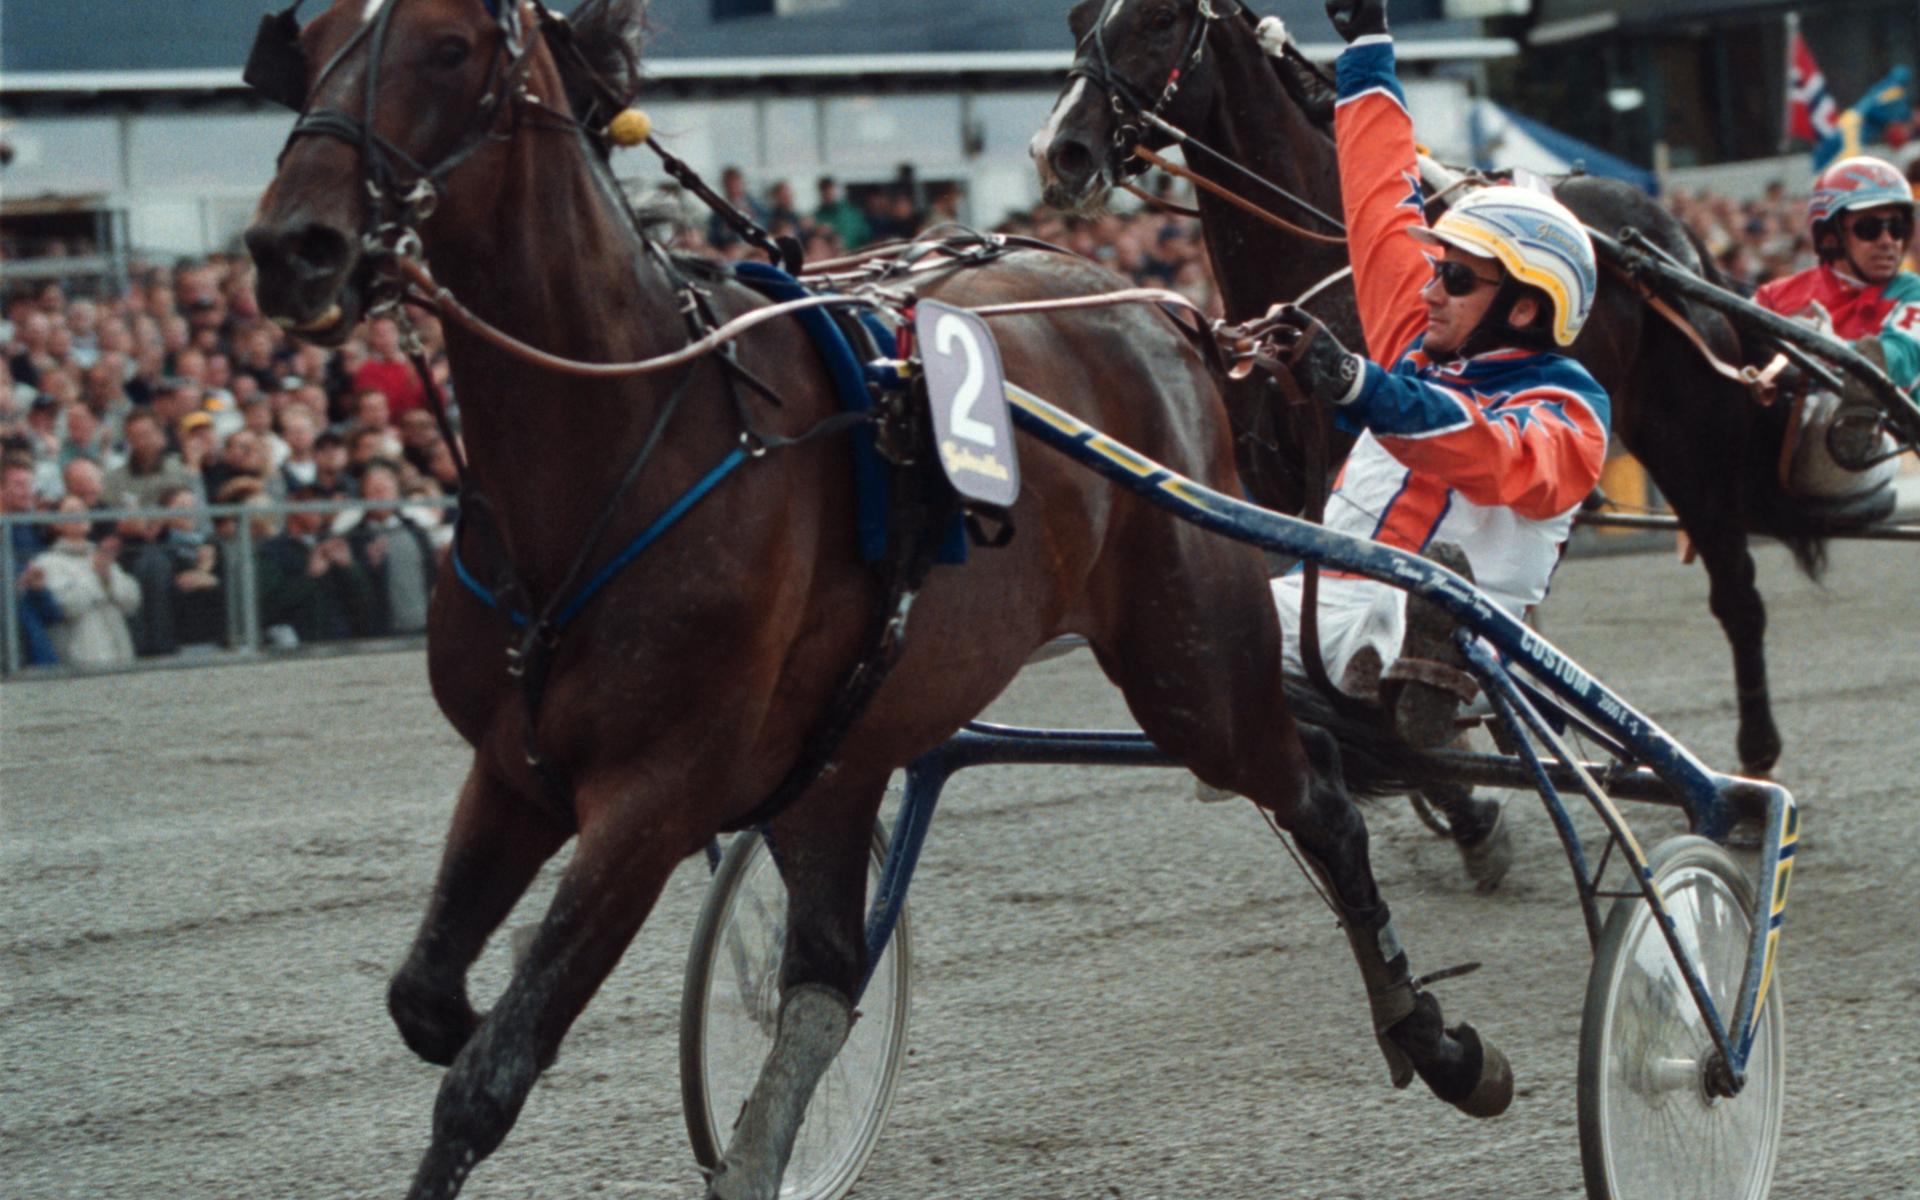 Gianpaolo Minnucci tog hem Elitloppet med italienska varmblodshingsten Varenne 2001. Varenne är en av nio hästar som vunnit Elitloppet två gånger.